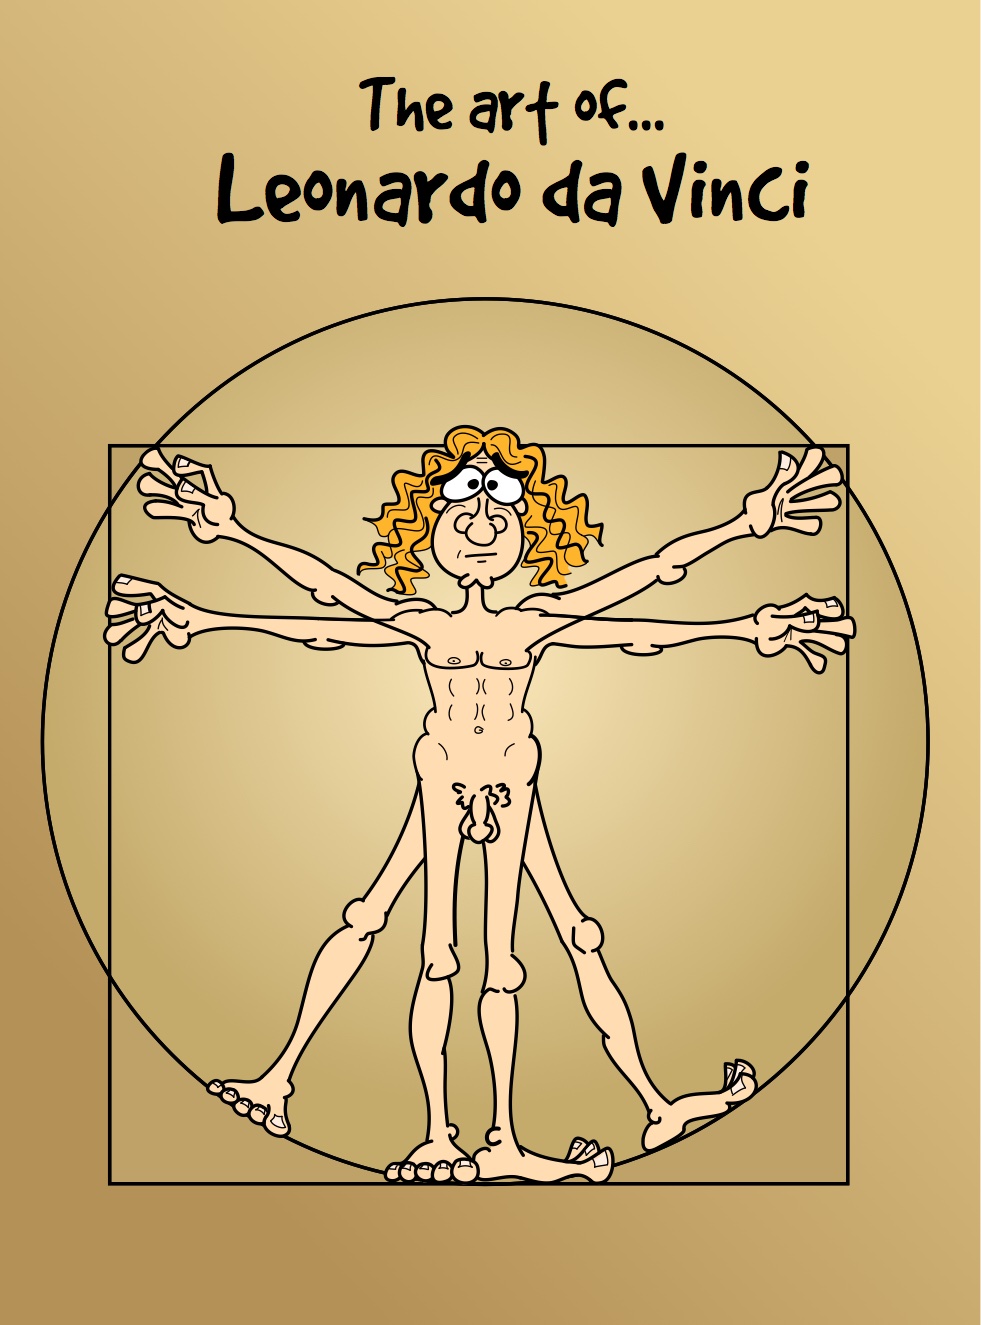 Cartoon Drawing of vitruvian man by Da Vinci